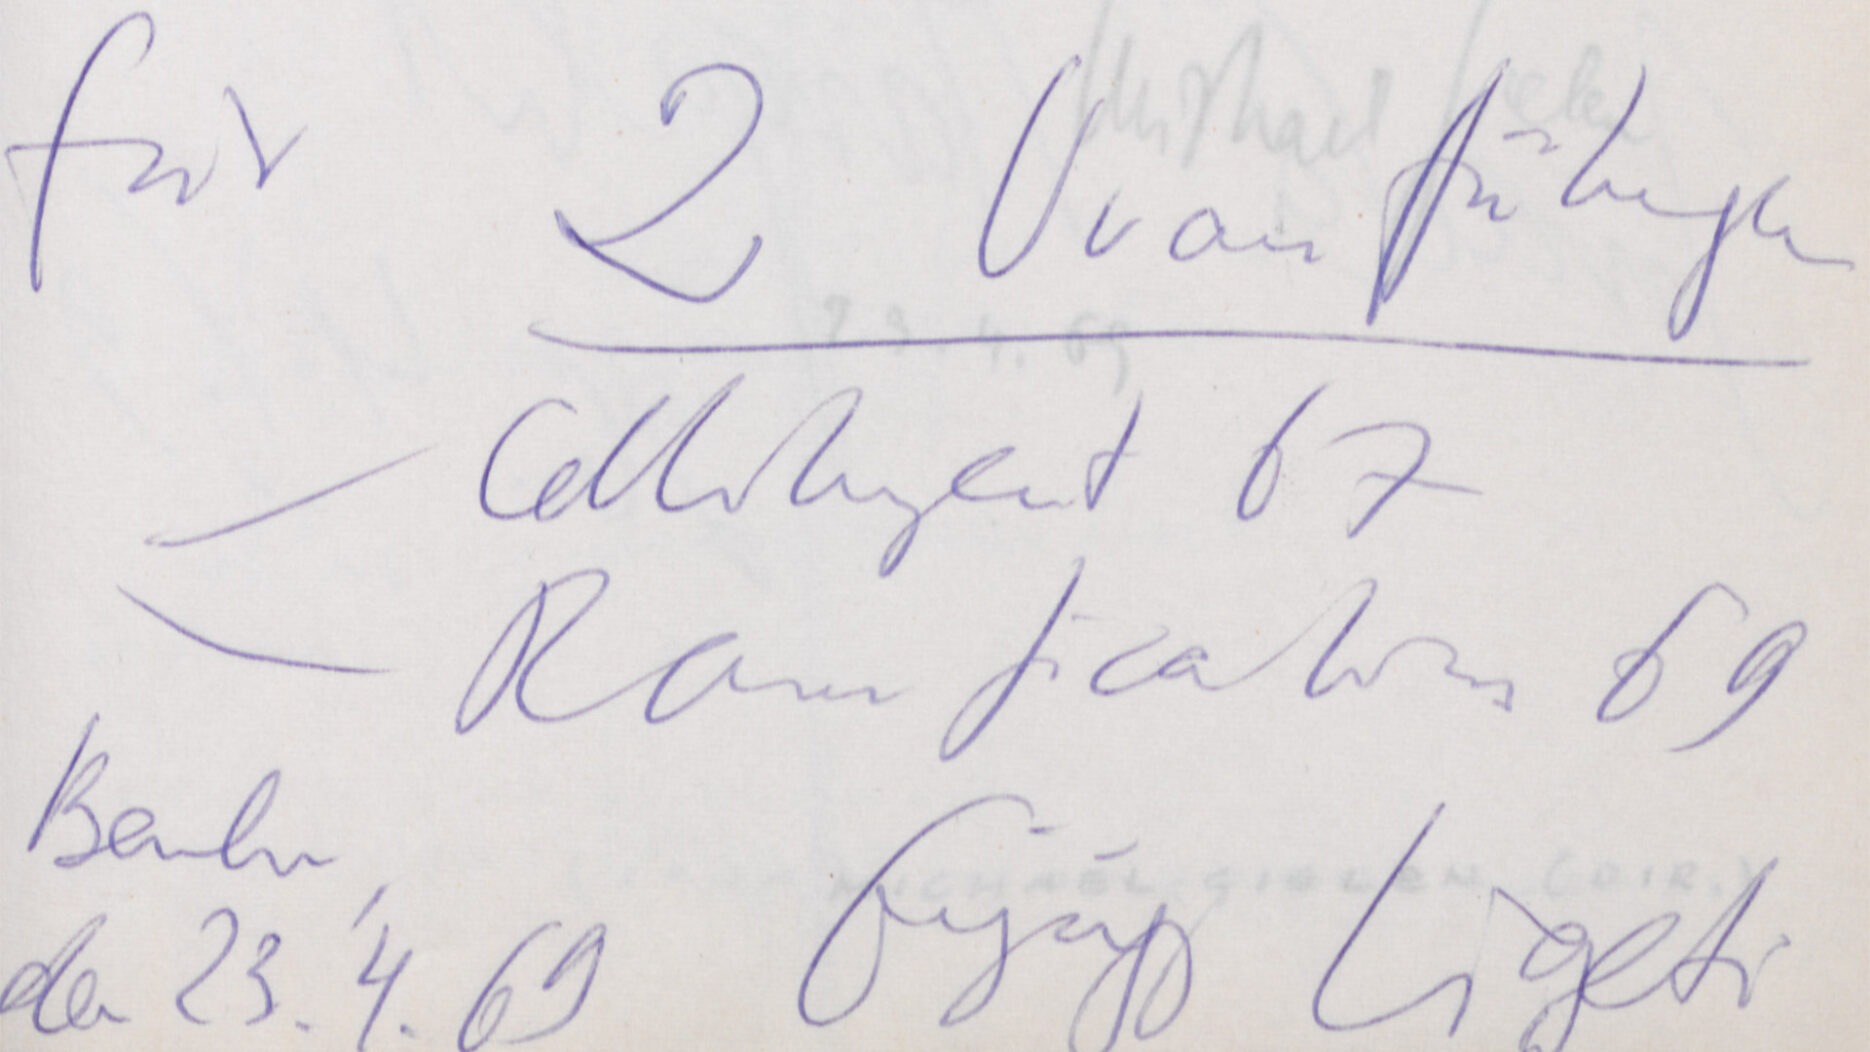 Widmung von György Ligeti am 23.4.1969. Foto: Archiv DSO